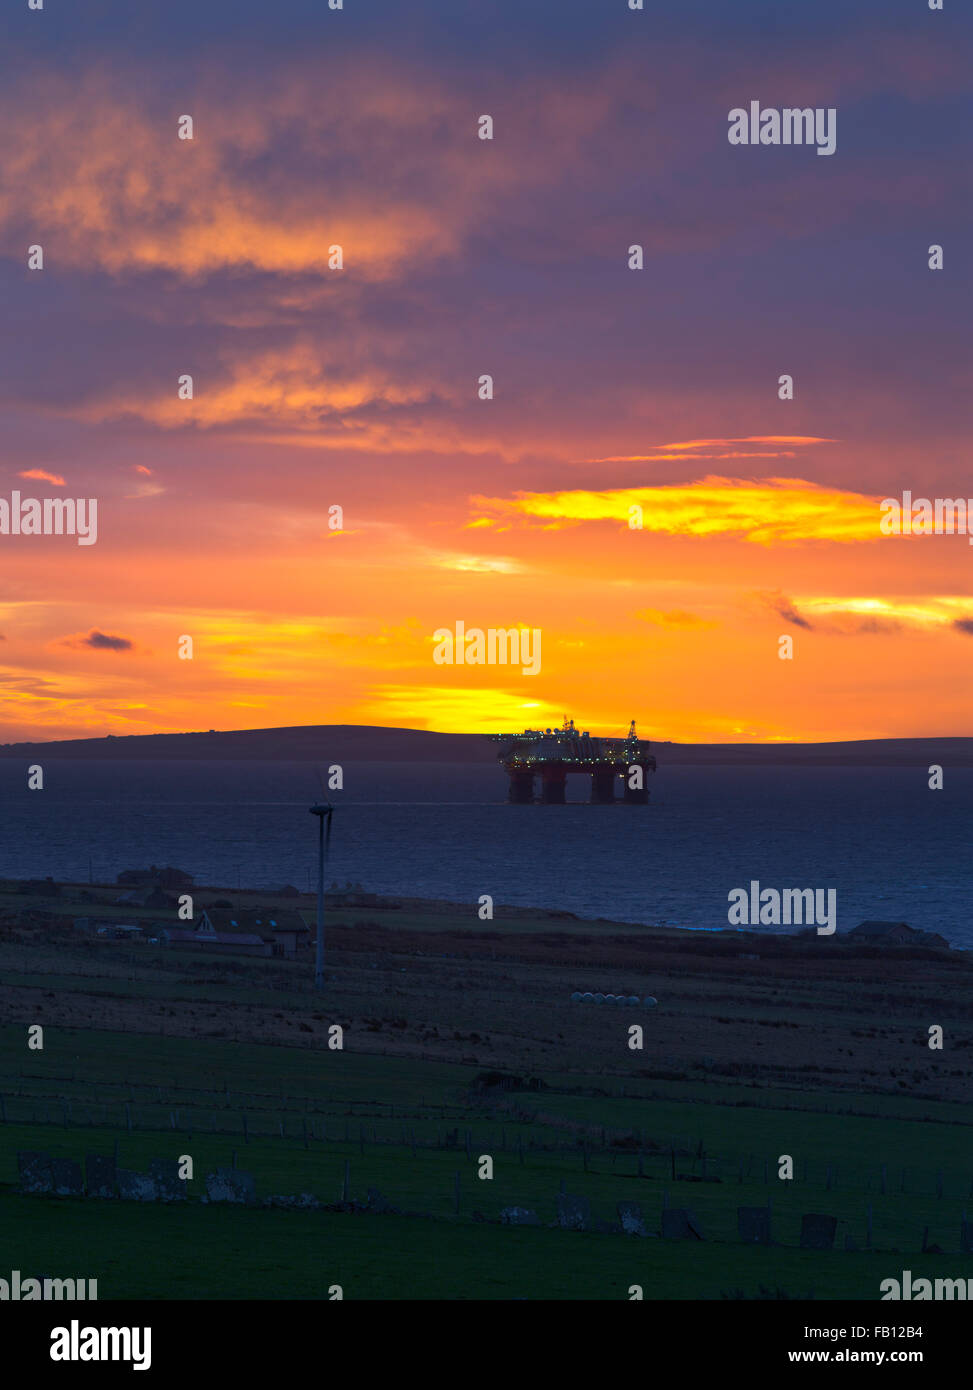 Dh ORKNEY Scapa Flow turbine éolienne de la plate-forme de forage de l'ciel soleil mer ancré ecosse uk sun rise Banque D'Images